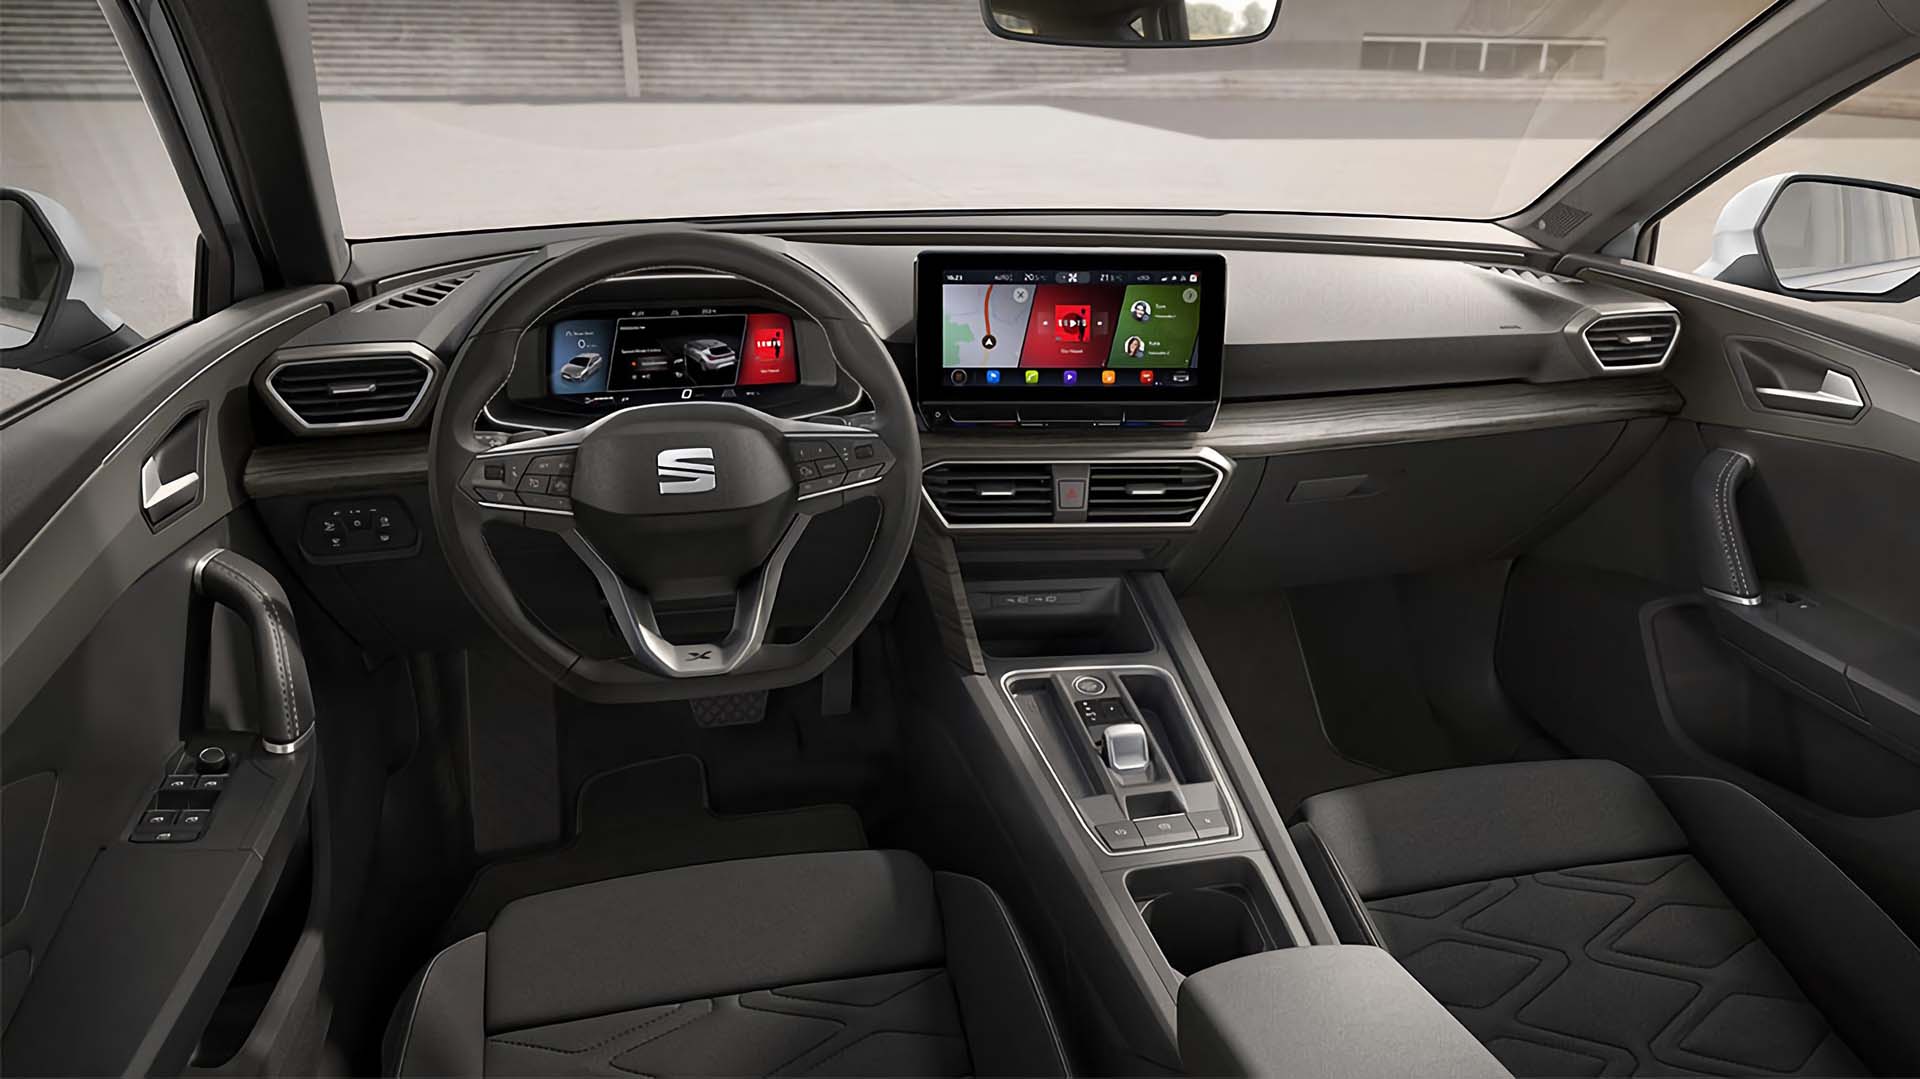 Seat Leon 2.0 TS Interior